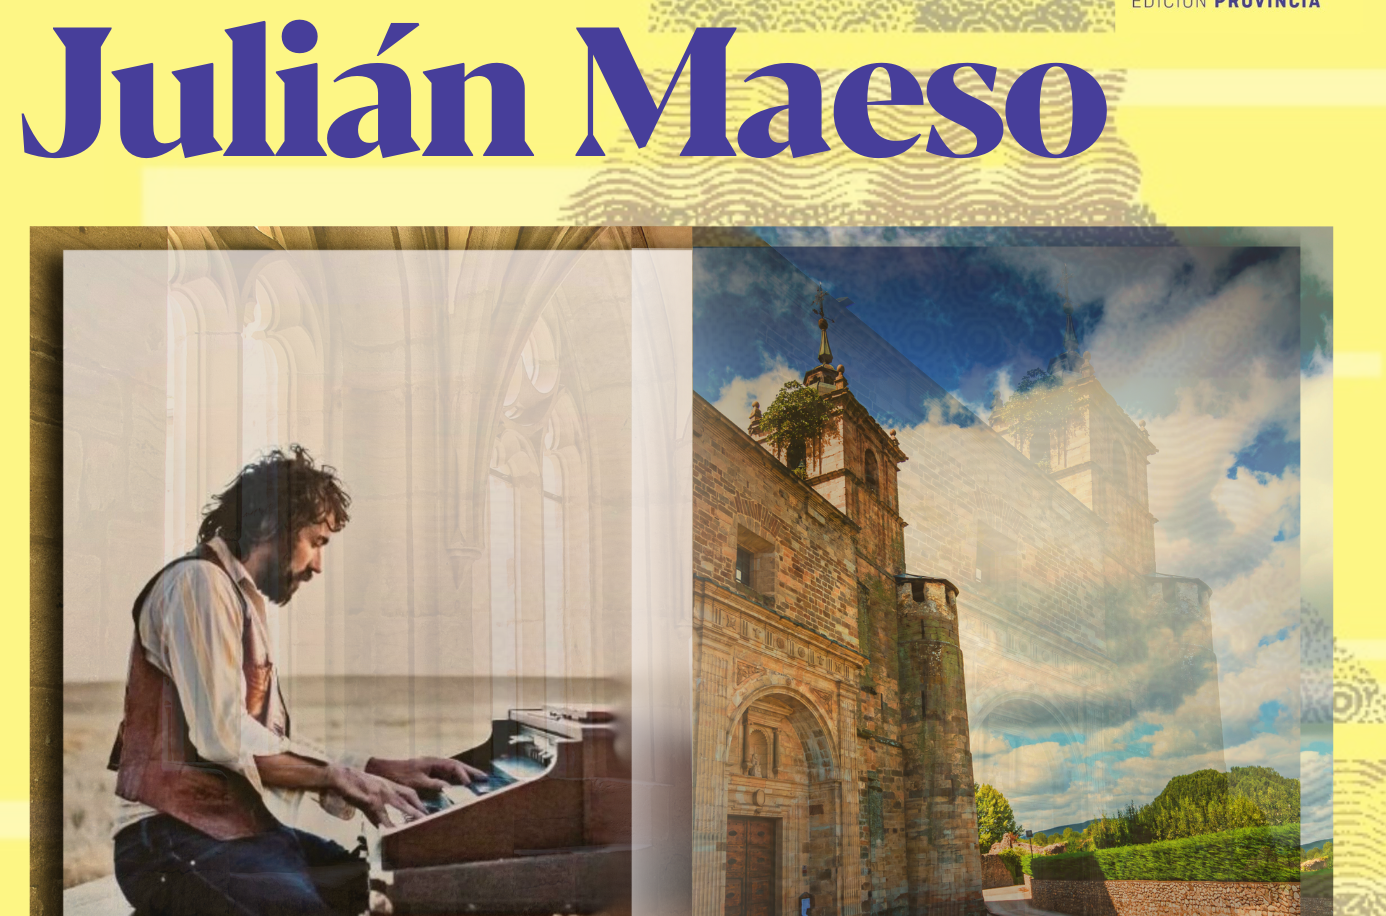  Un concierto de Julián Maeso abrirá el festival Famol ´24 en el Monasterio de Carracedo 1